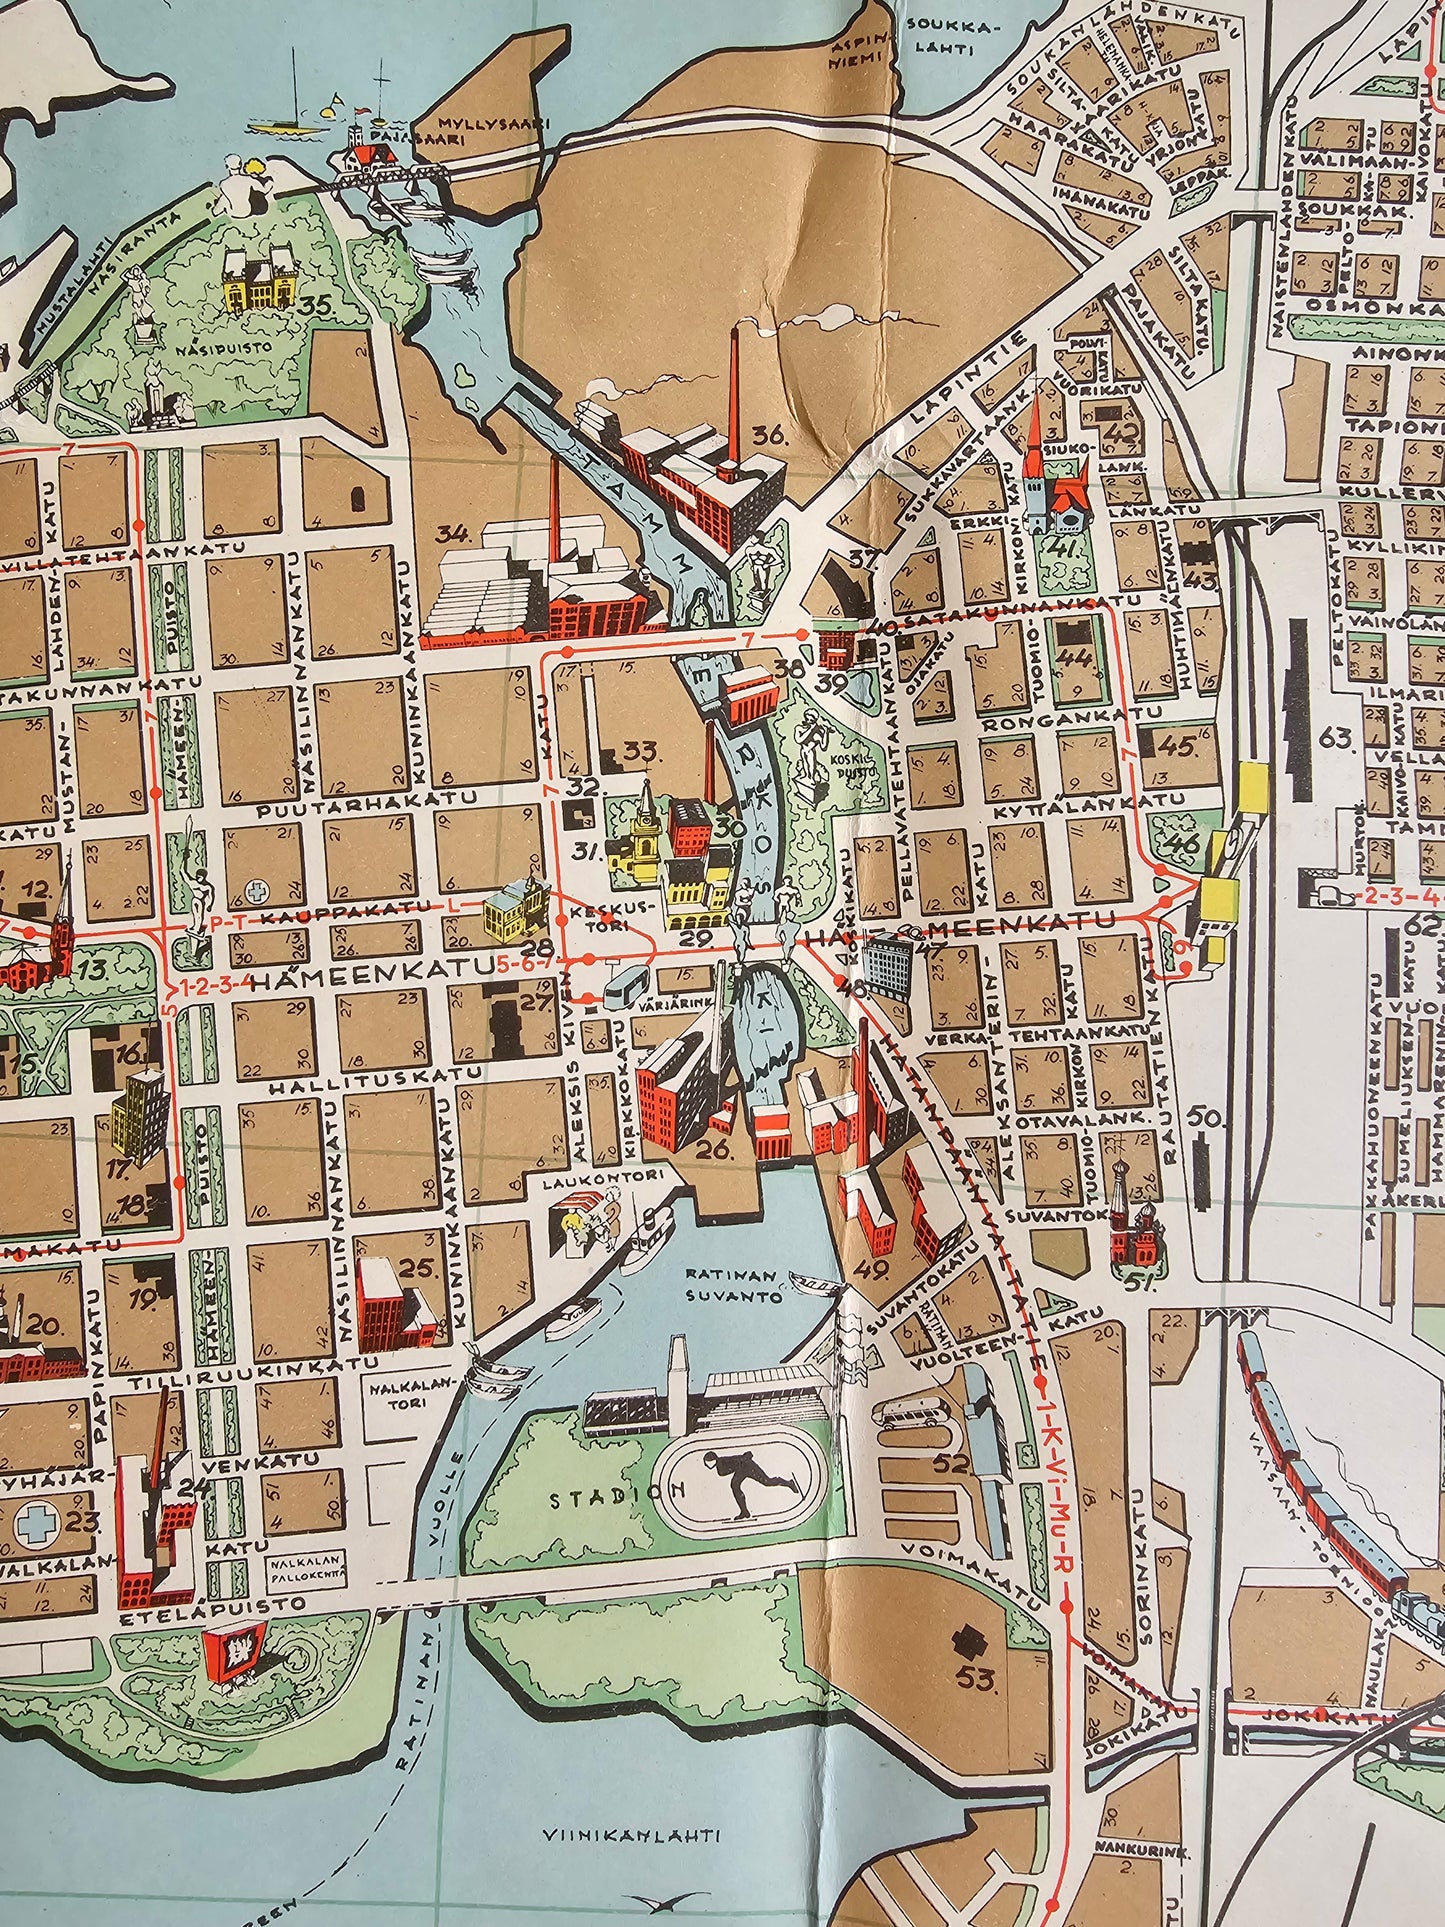 Tampereen kartta 1951